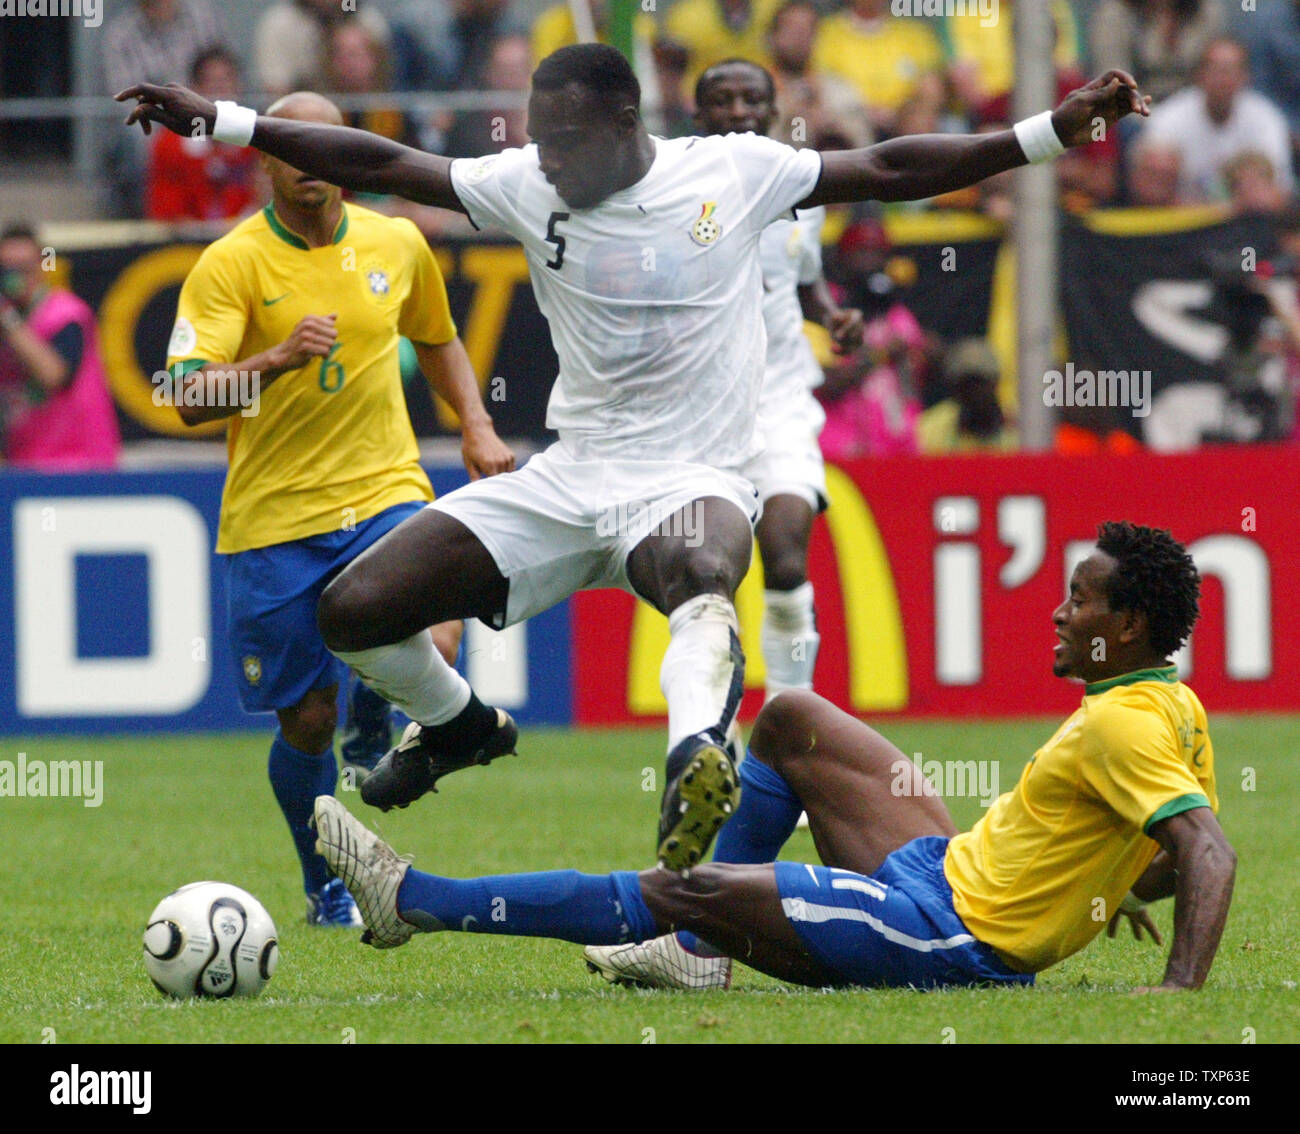 Ghana's John Mensah jumps over Ze Roberto from Brazil in World Cup soccer action in Dortmund, Germany on June 27, 2006.  Brazil beat Ghana 3-0.   (UPI Photo/Arthur Thill) Stock Photo